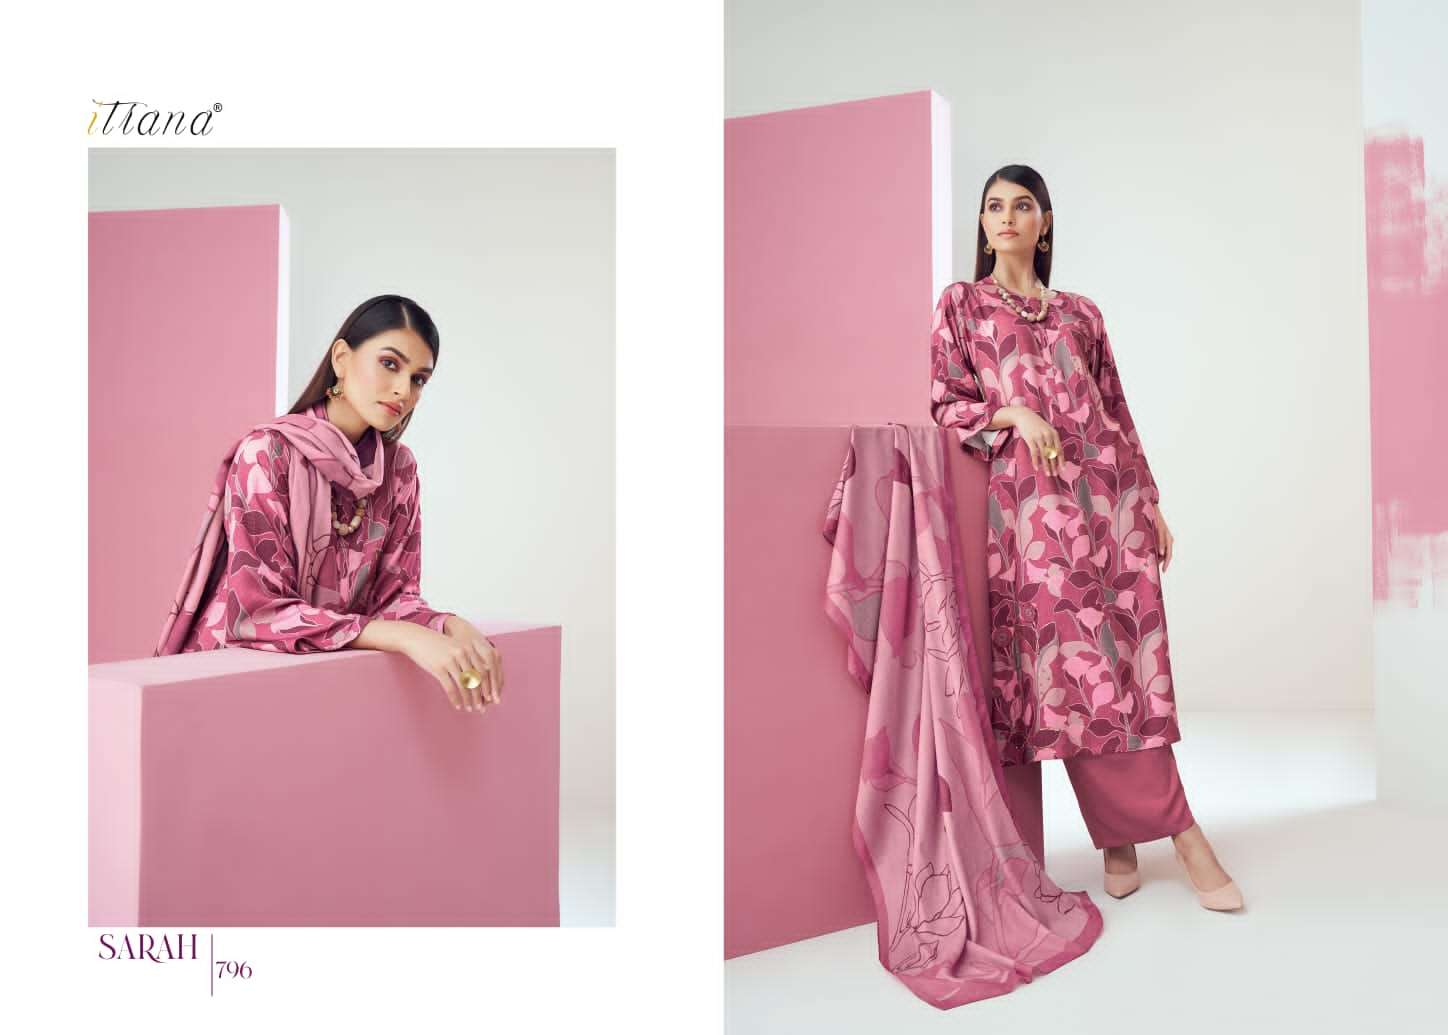 Itrana sarah catalog muslin silk designer salwar suits collection at wholesale price